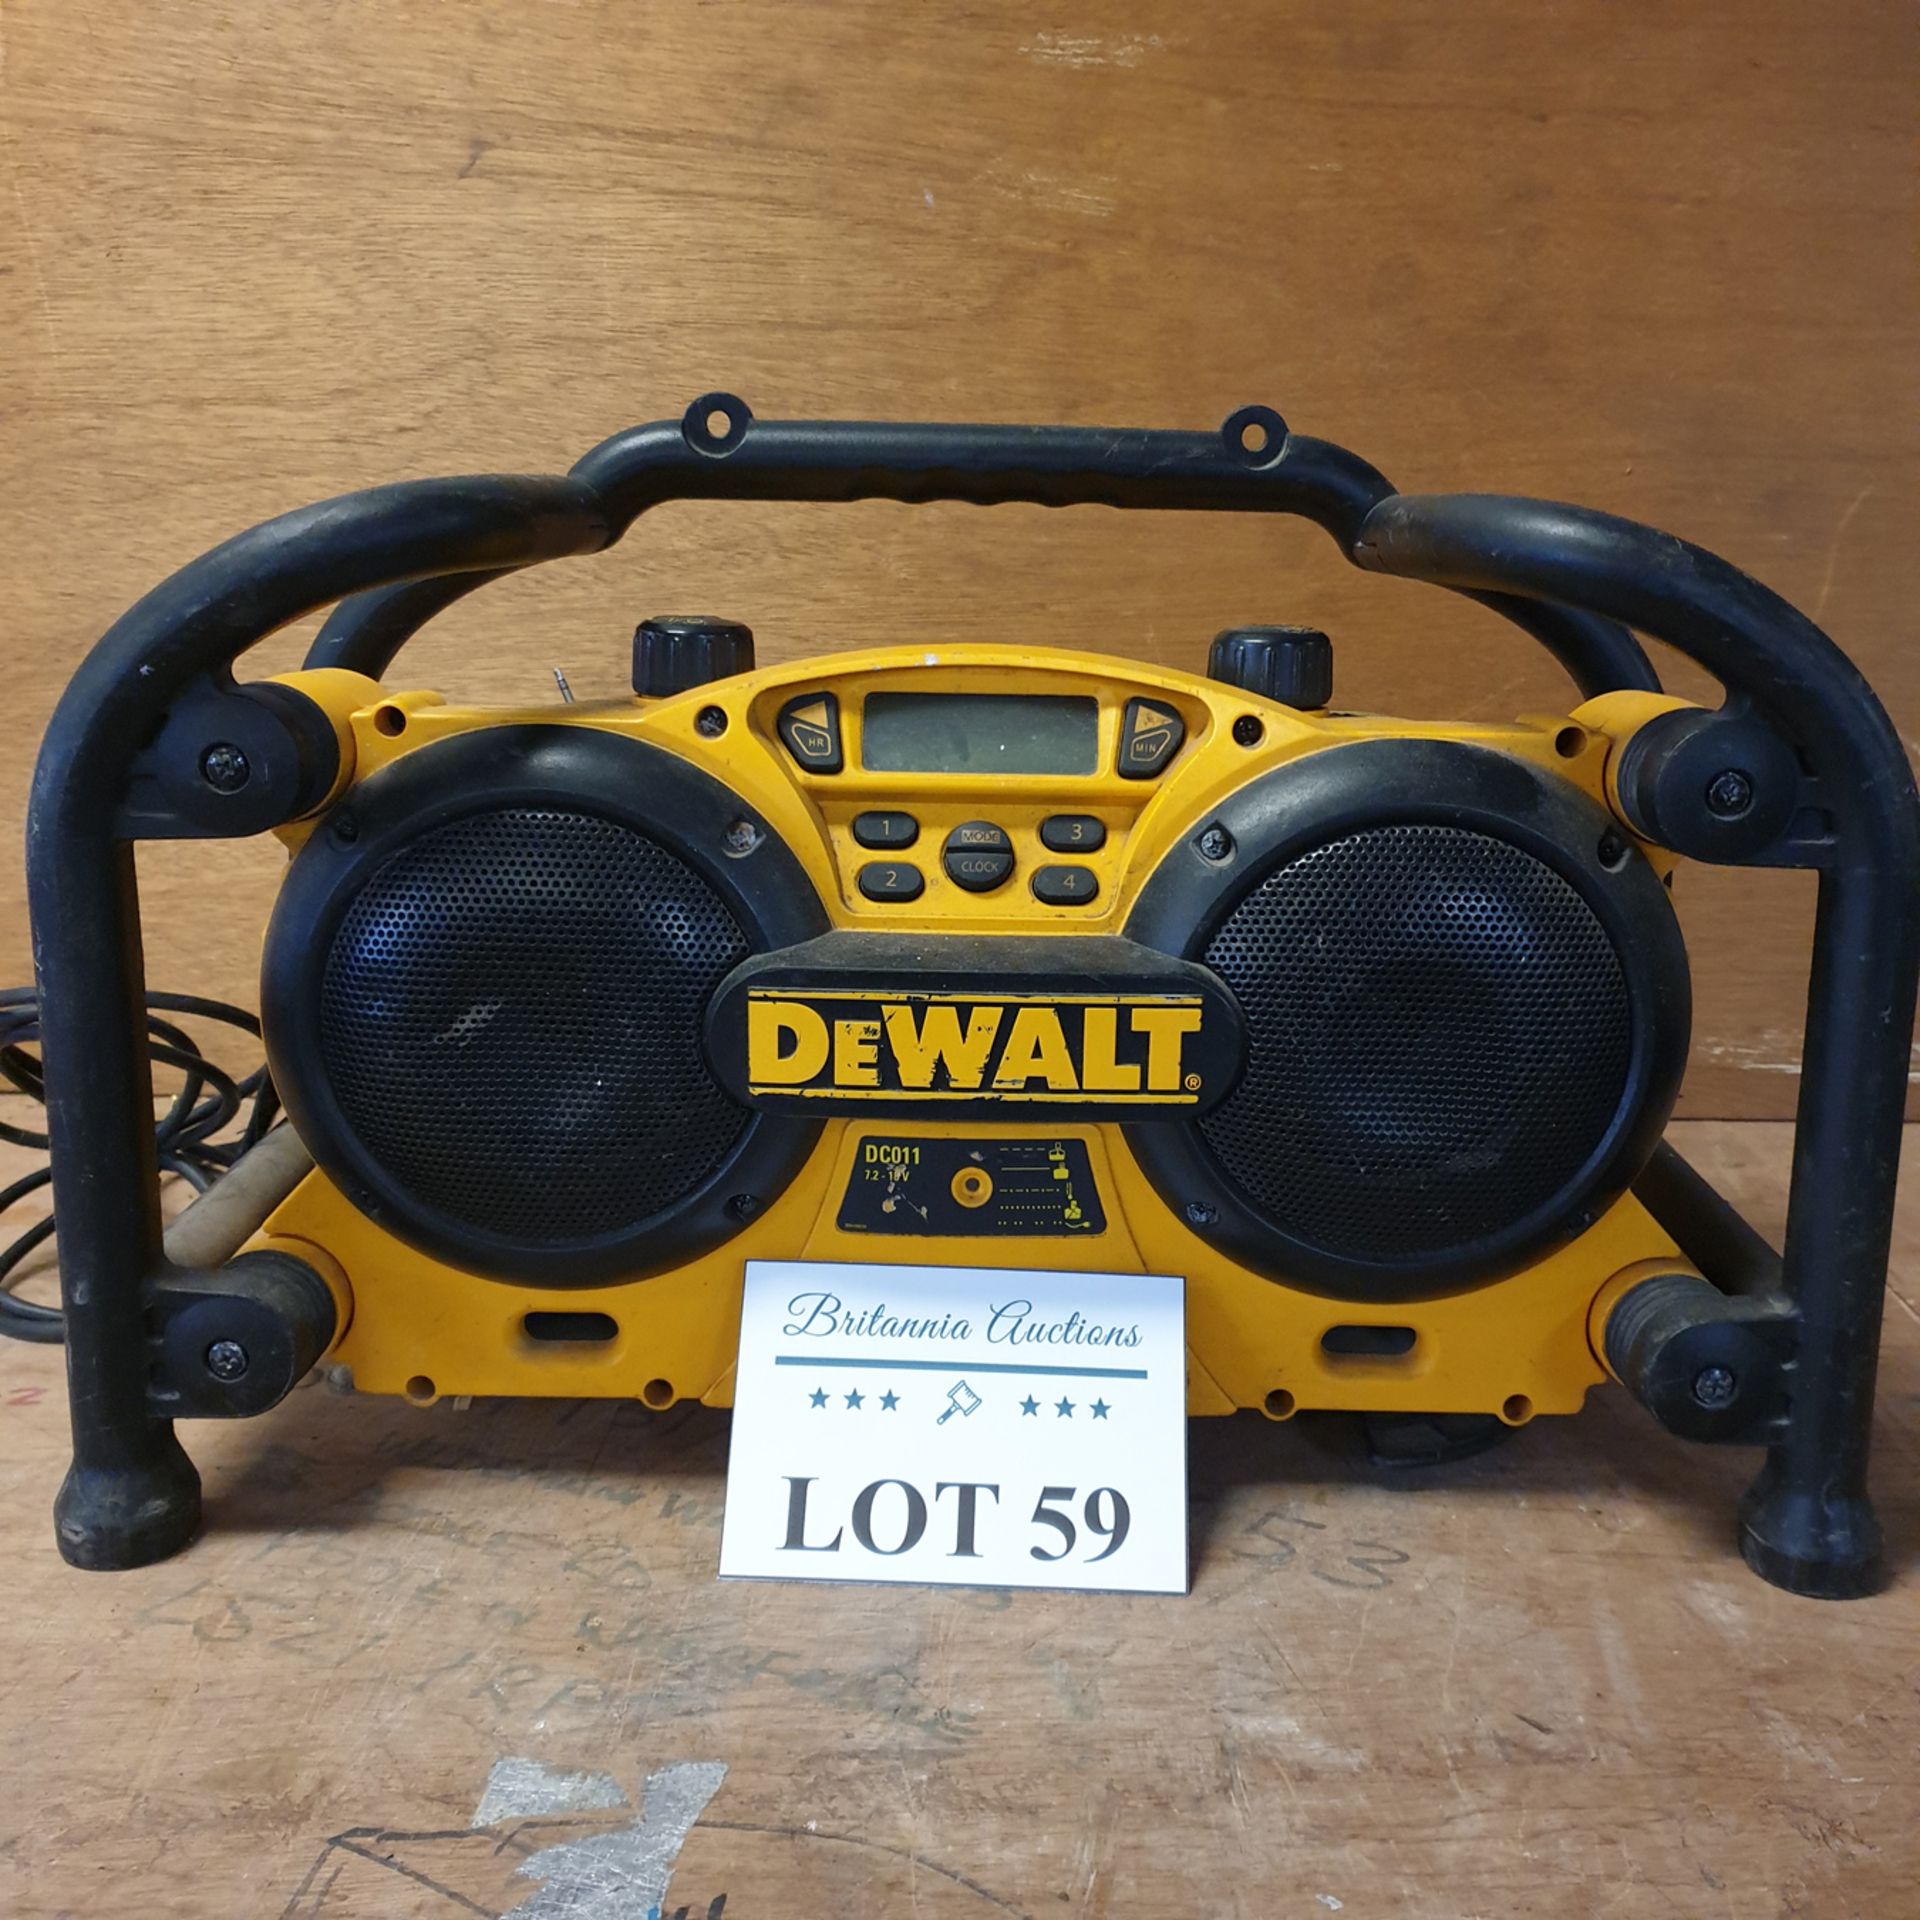 DeWalt Radio DC011 - 110V. - Image 2 of 3